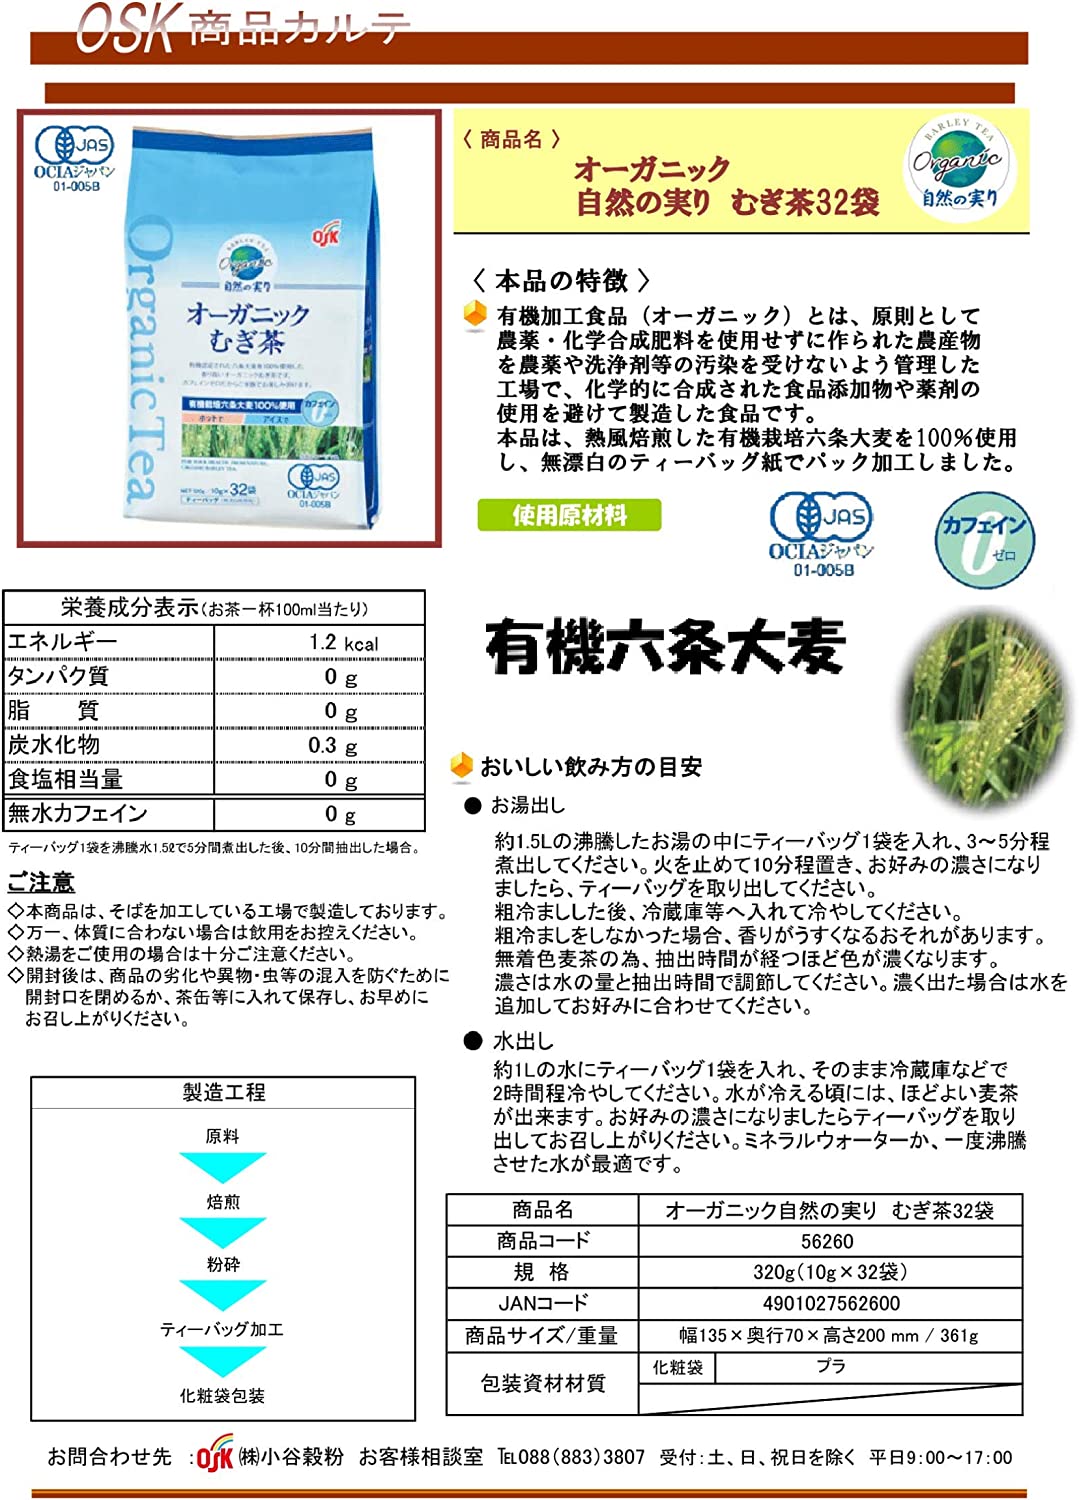 OSK Organic Natural Fruit Barley Tea 10g x 32 Teabags - NihonMura